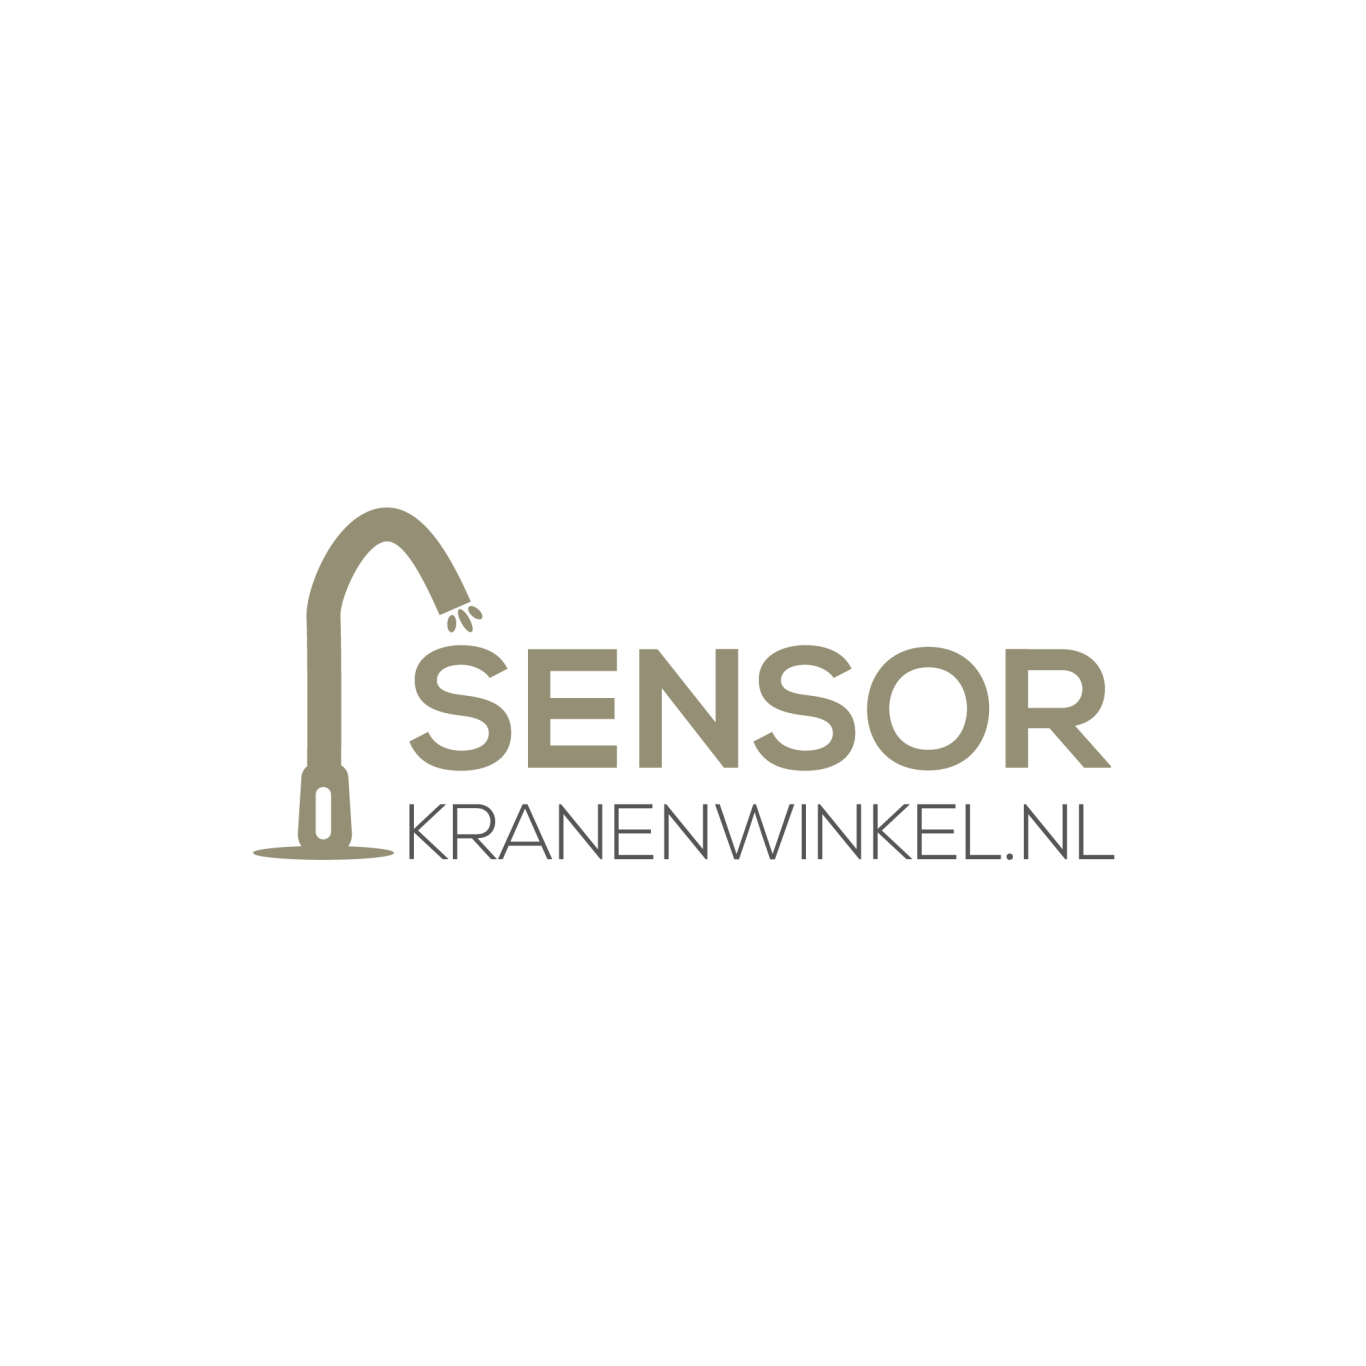 Sensorkranenwinkel.nls achtergrond